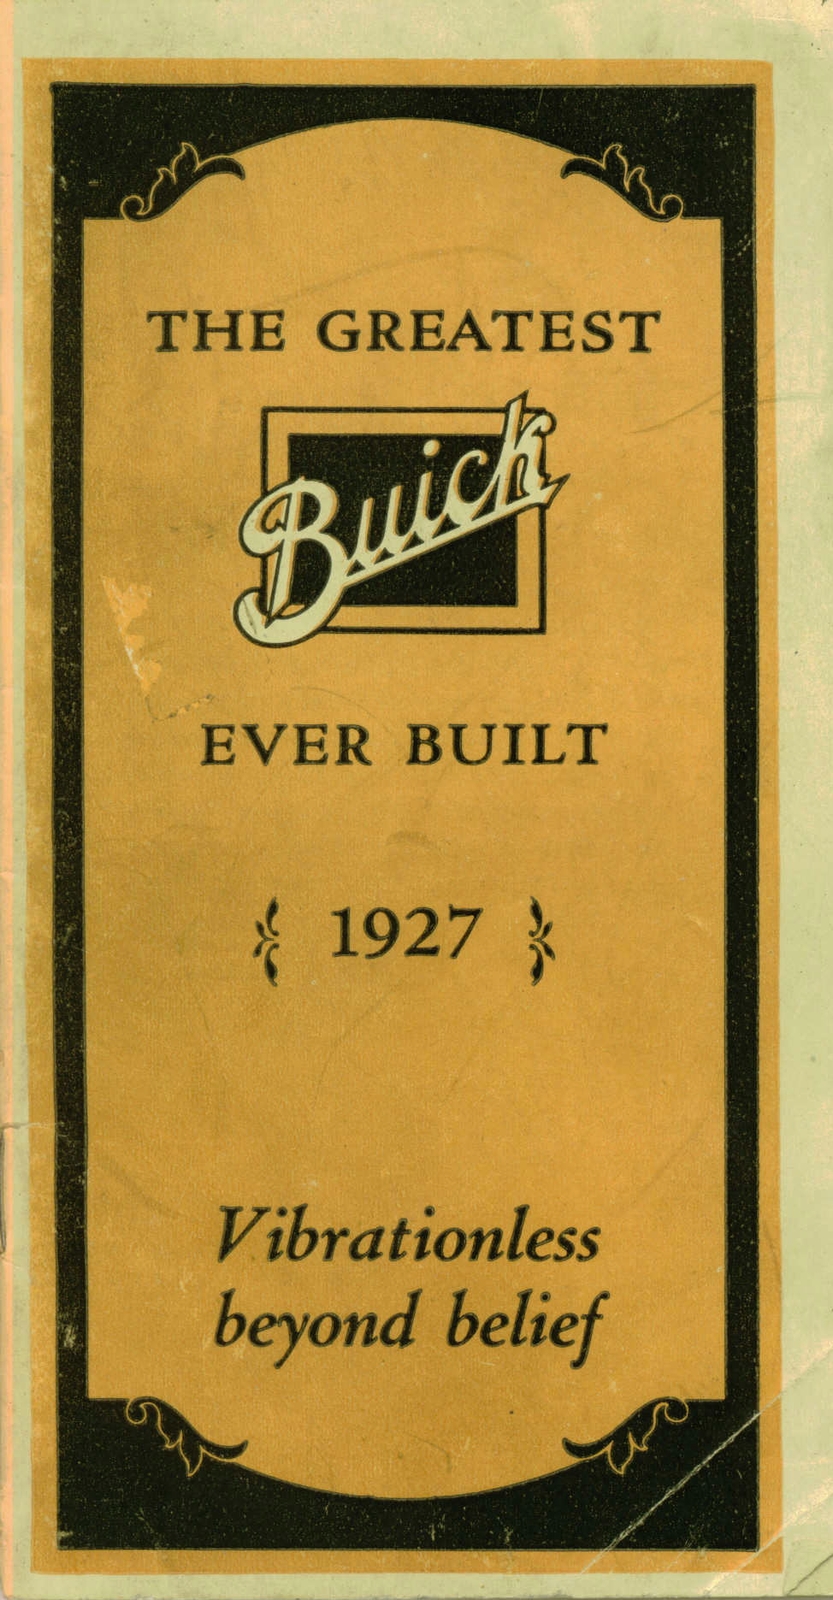 n_1927 Buick Booklet-01.jpg